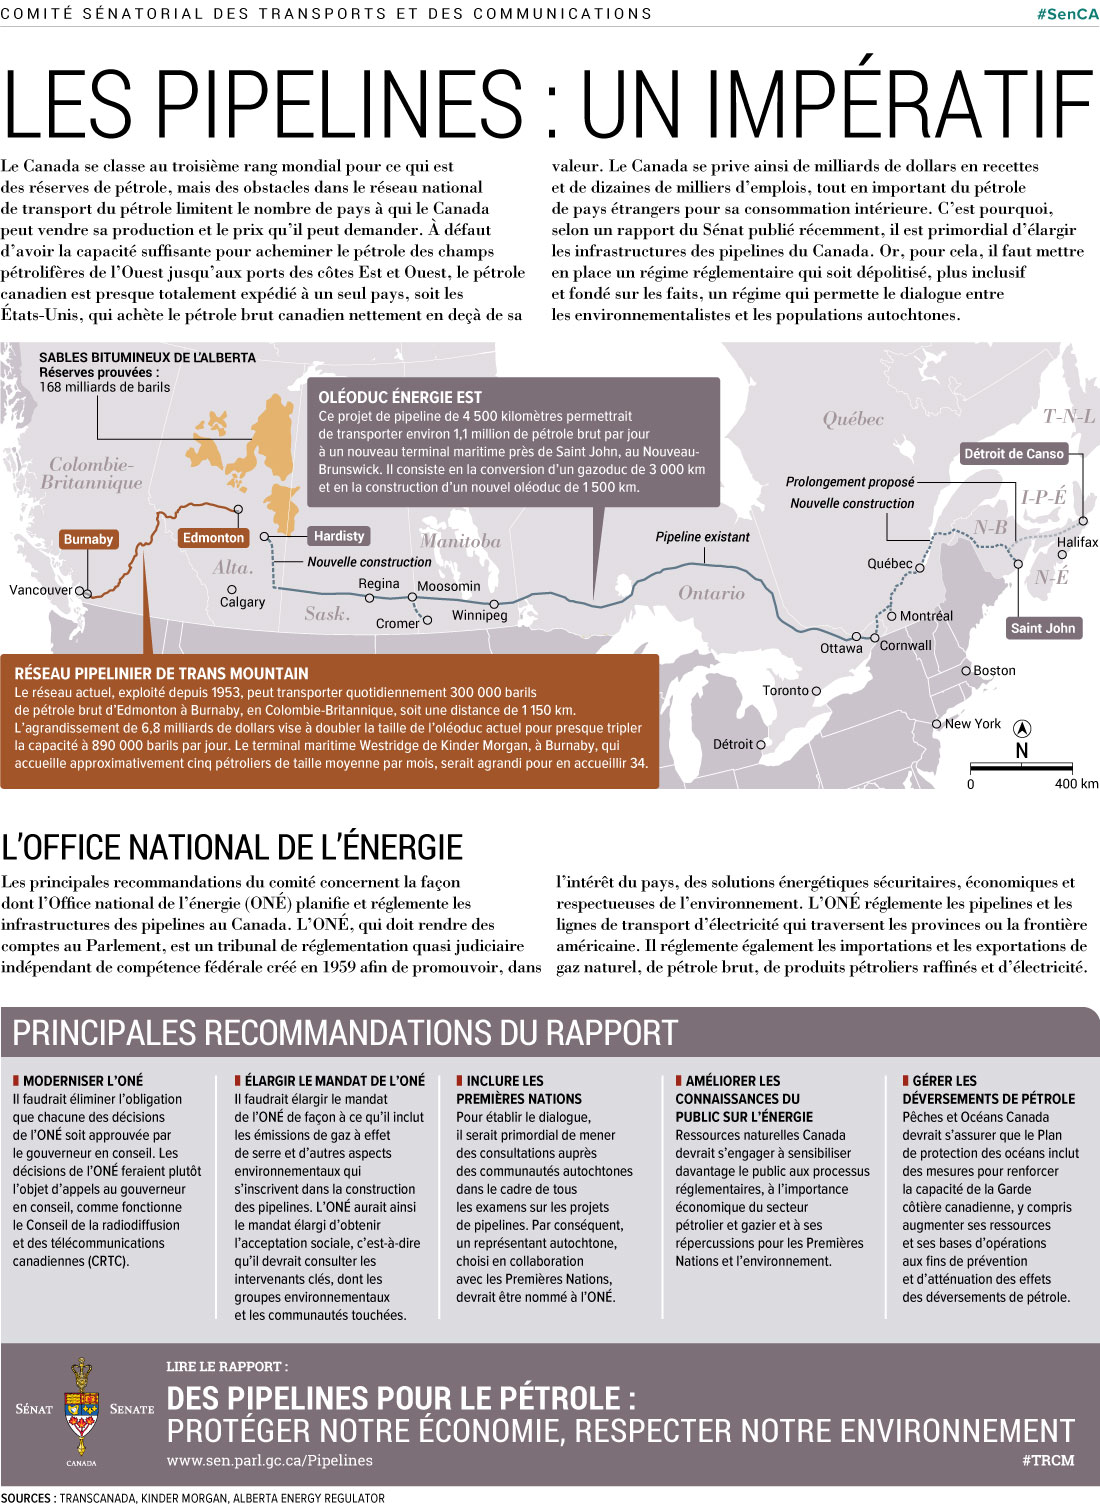 Infographi sur les pipelines